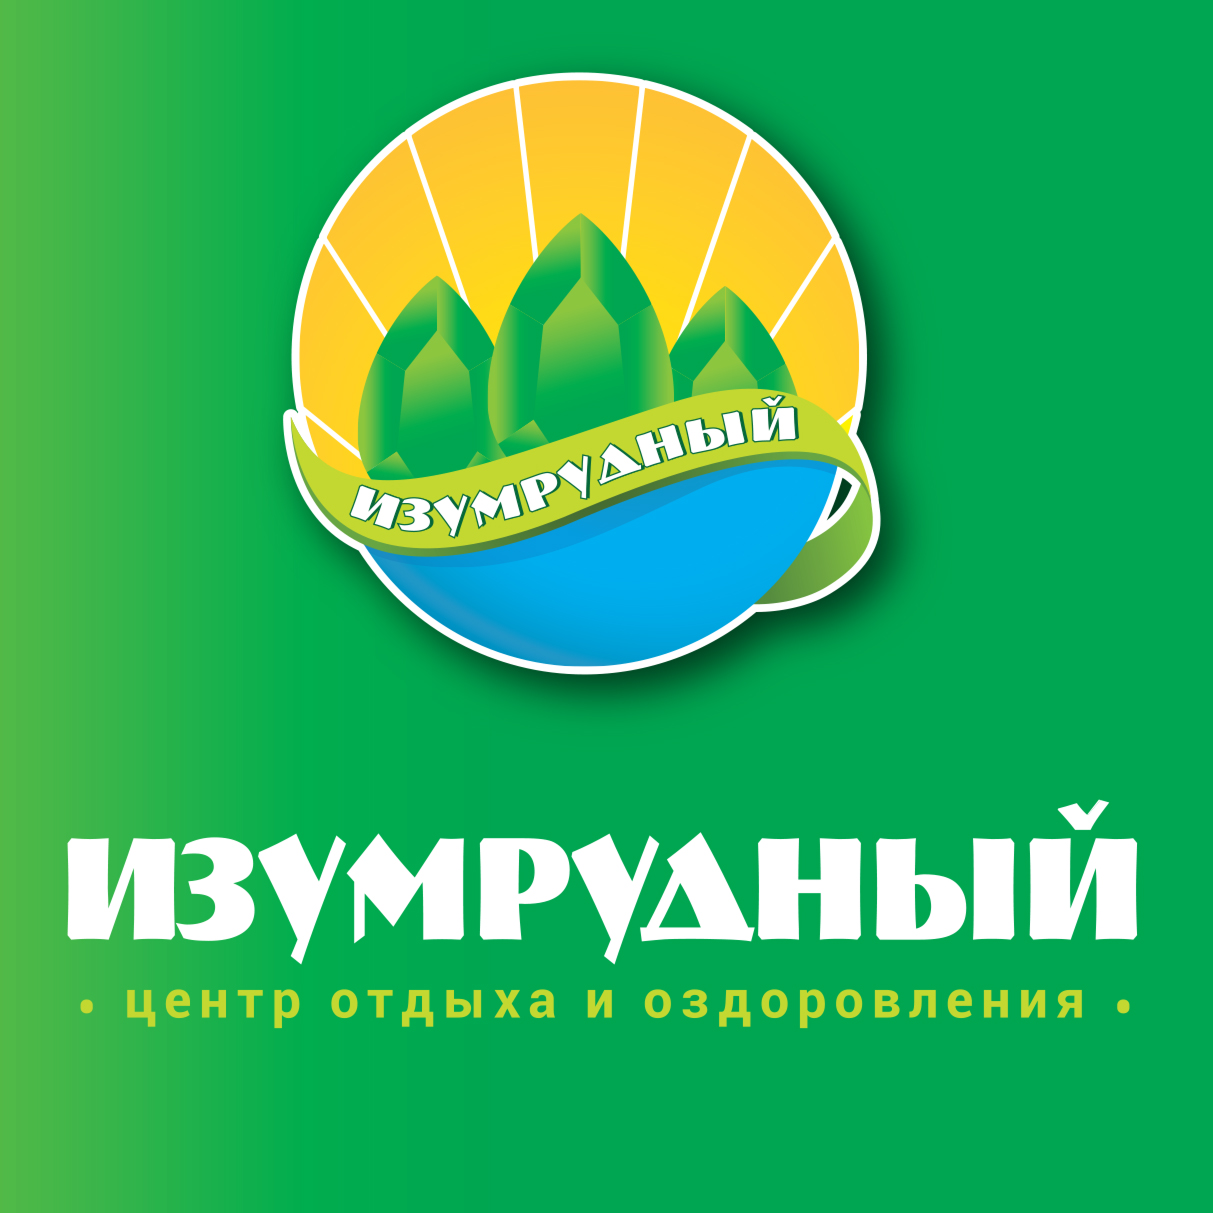 Логотип лагеря Автономное учреждение "Центр отдыха и оздоровления "Изумрудный" Шатурского муниципального района Московской области"